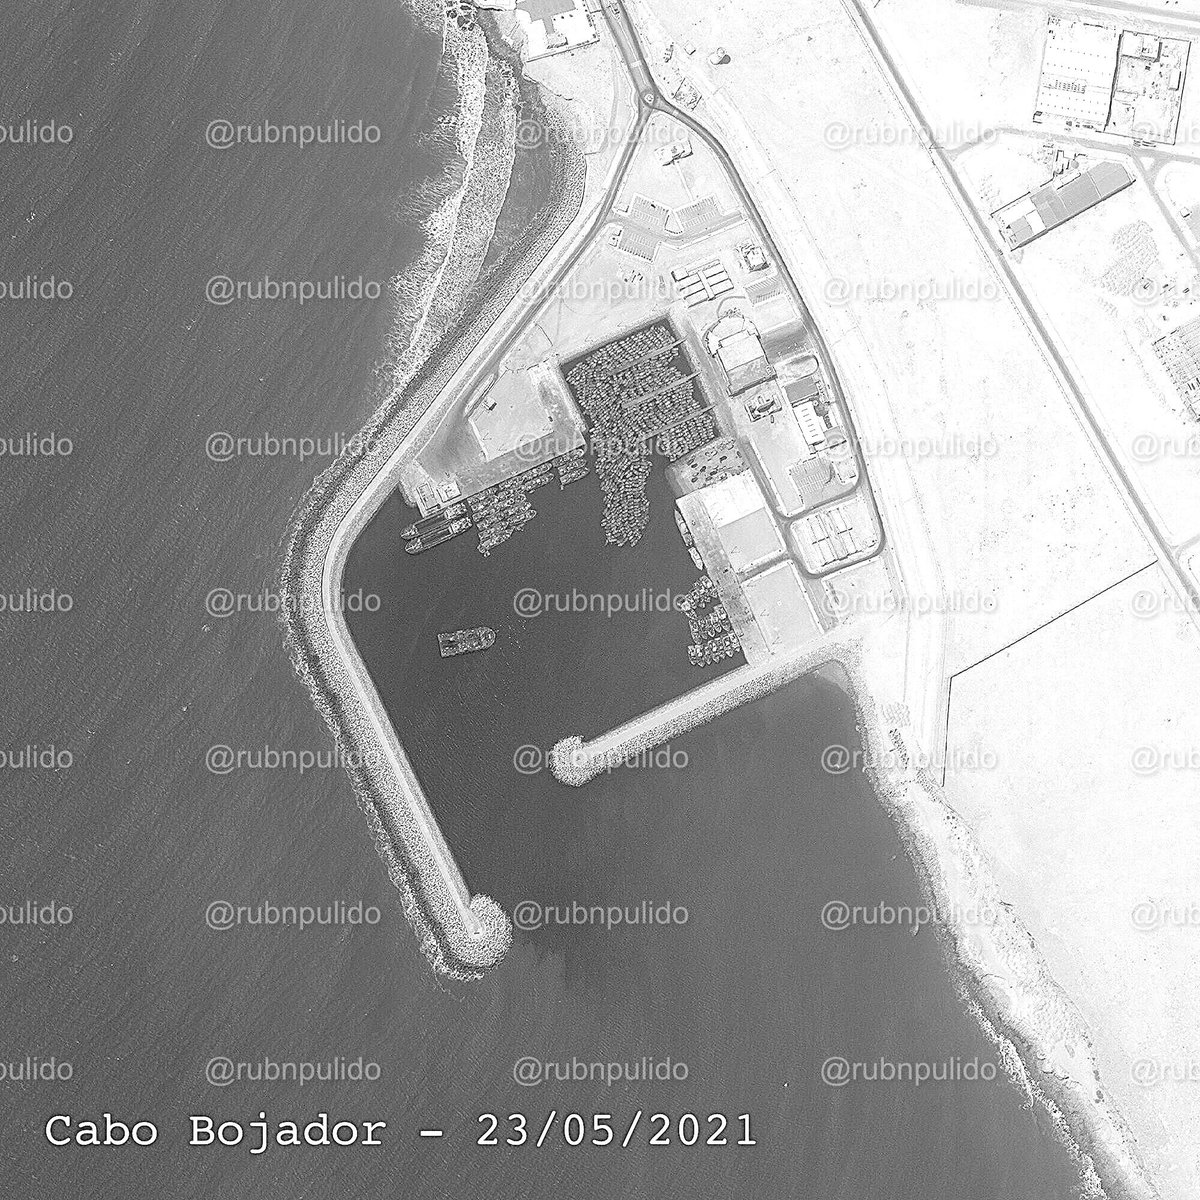  Cabo Bojador. Imágenes satelitales tomadas desde septiembre de 2019 a mayo de 2021.En poco más de un año, un puerto utilizado para la pesca triplica el número de embarcaciones. Actualmente se mantiene en un número similar. Y NO, no es por la pesca.